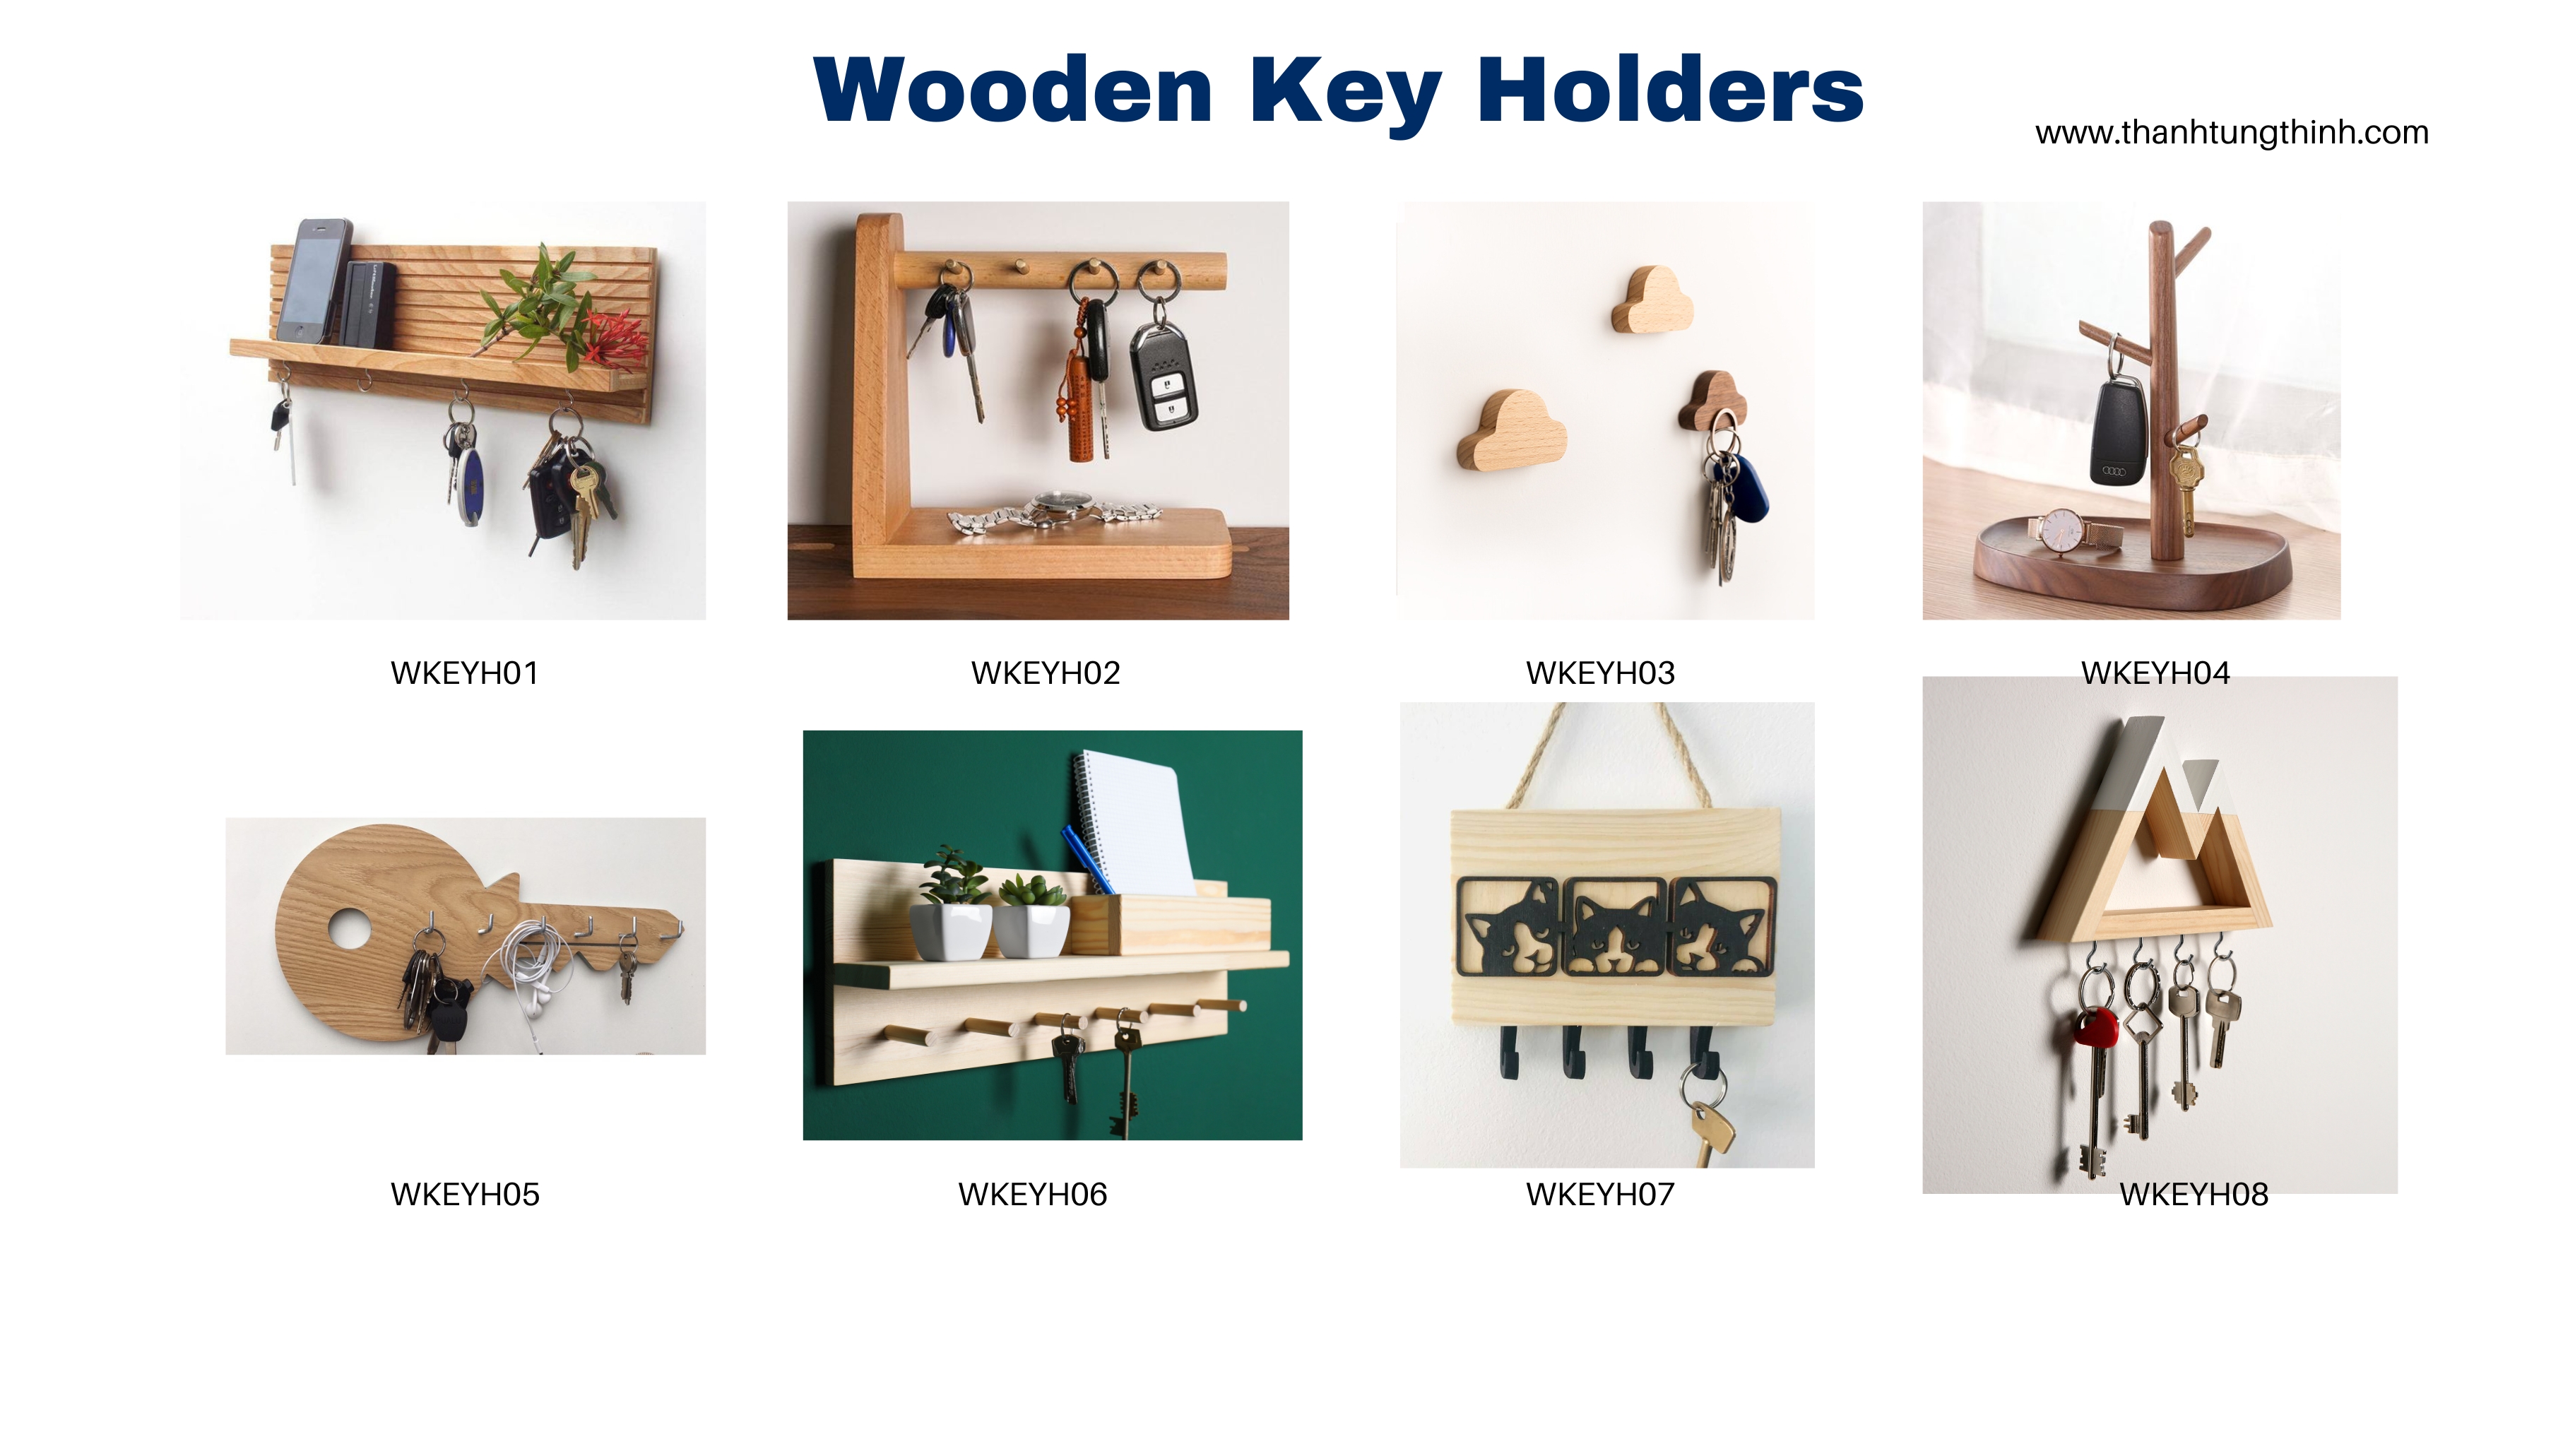 Wooden-key-holder-manufacturer